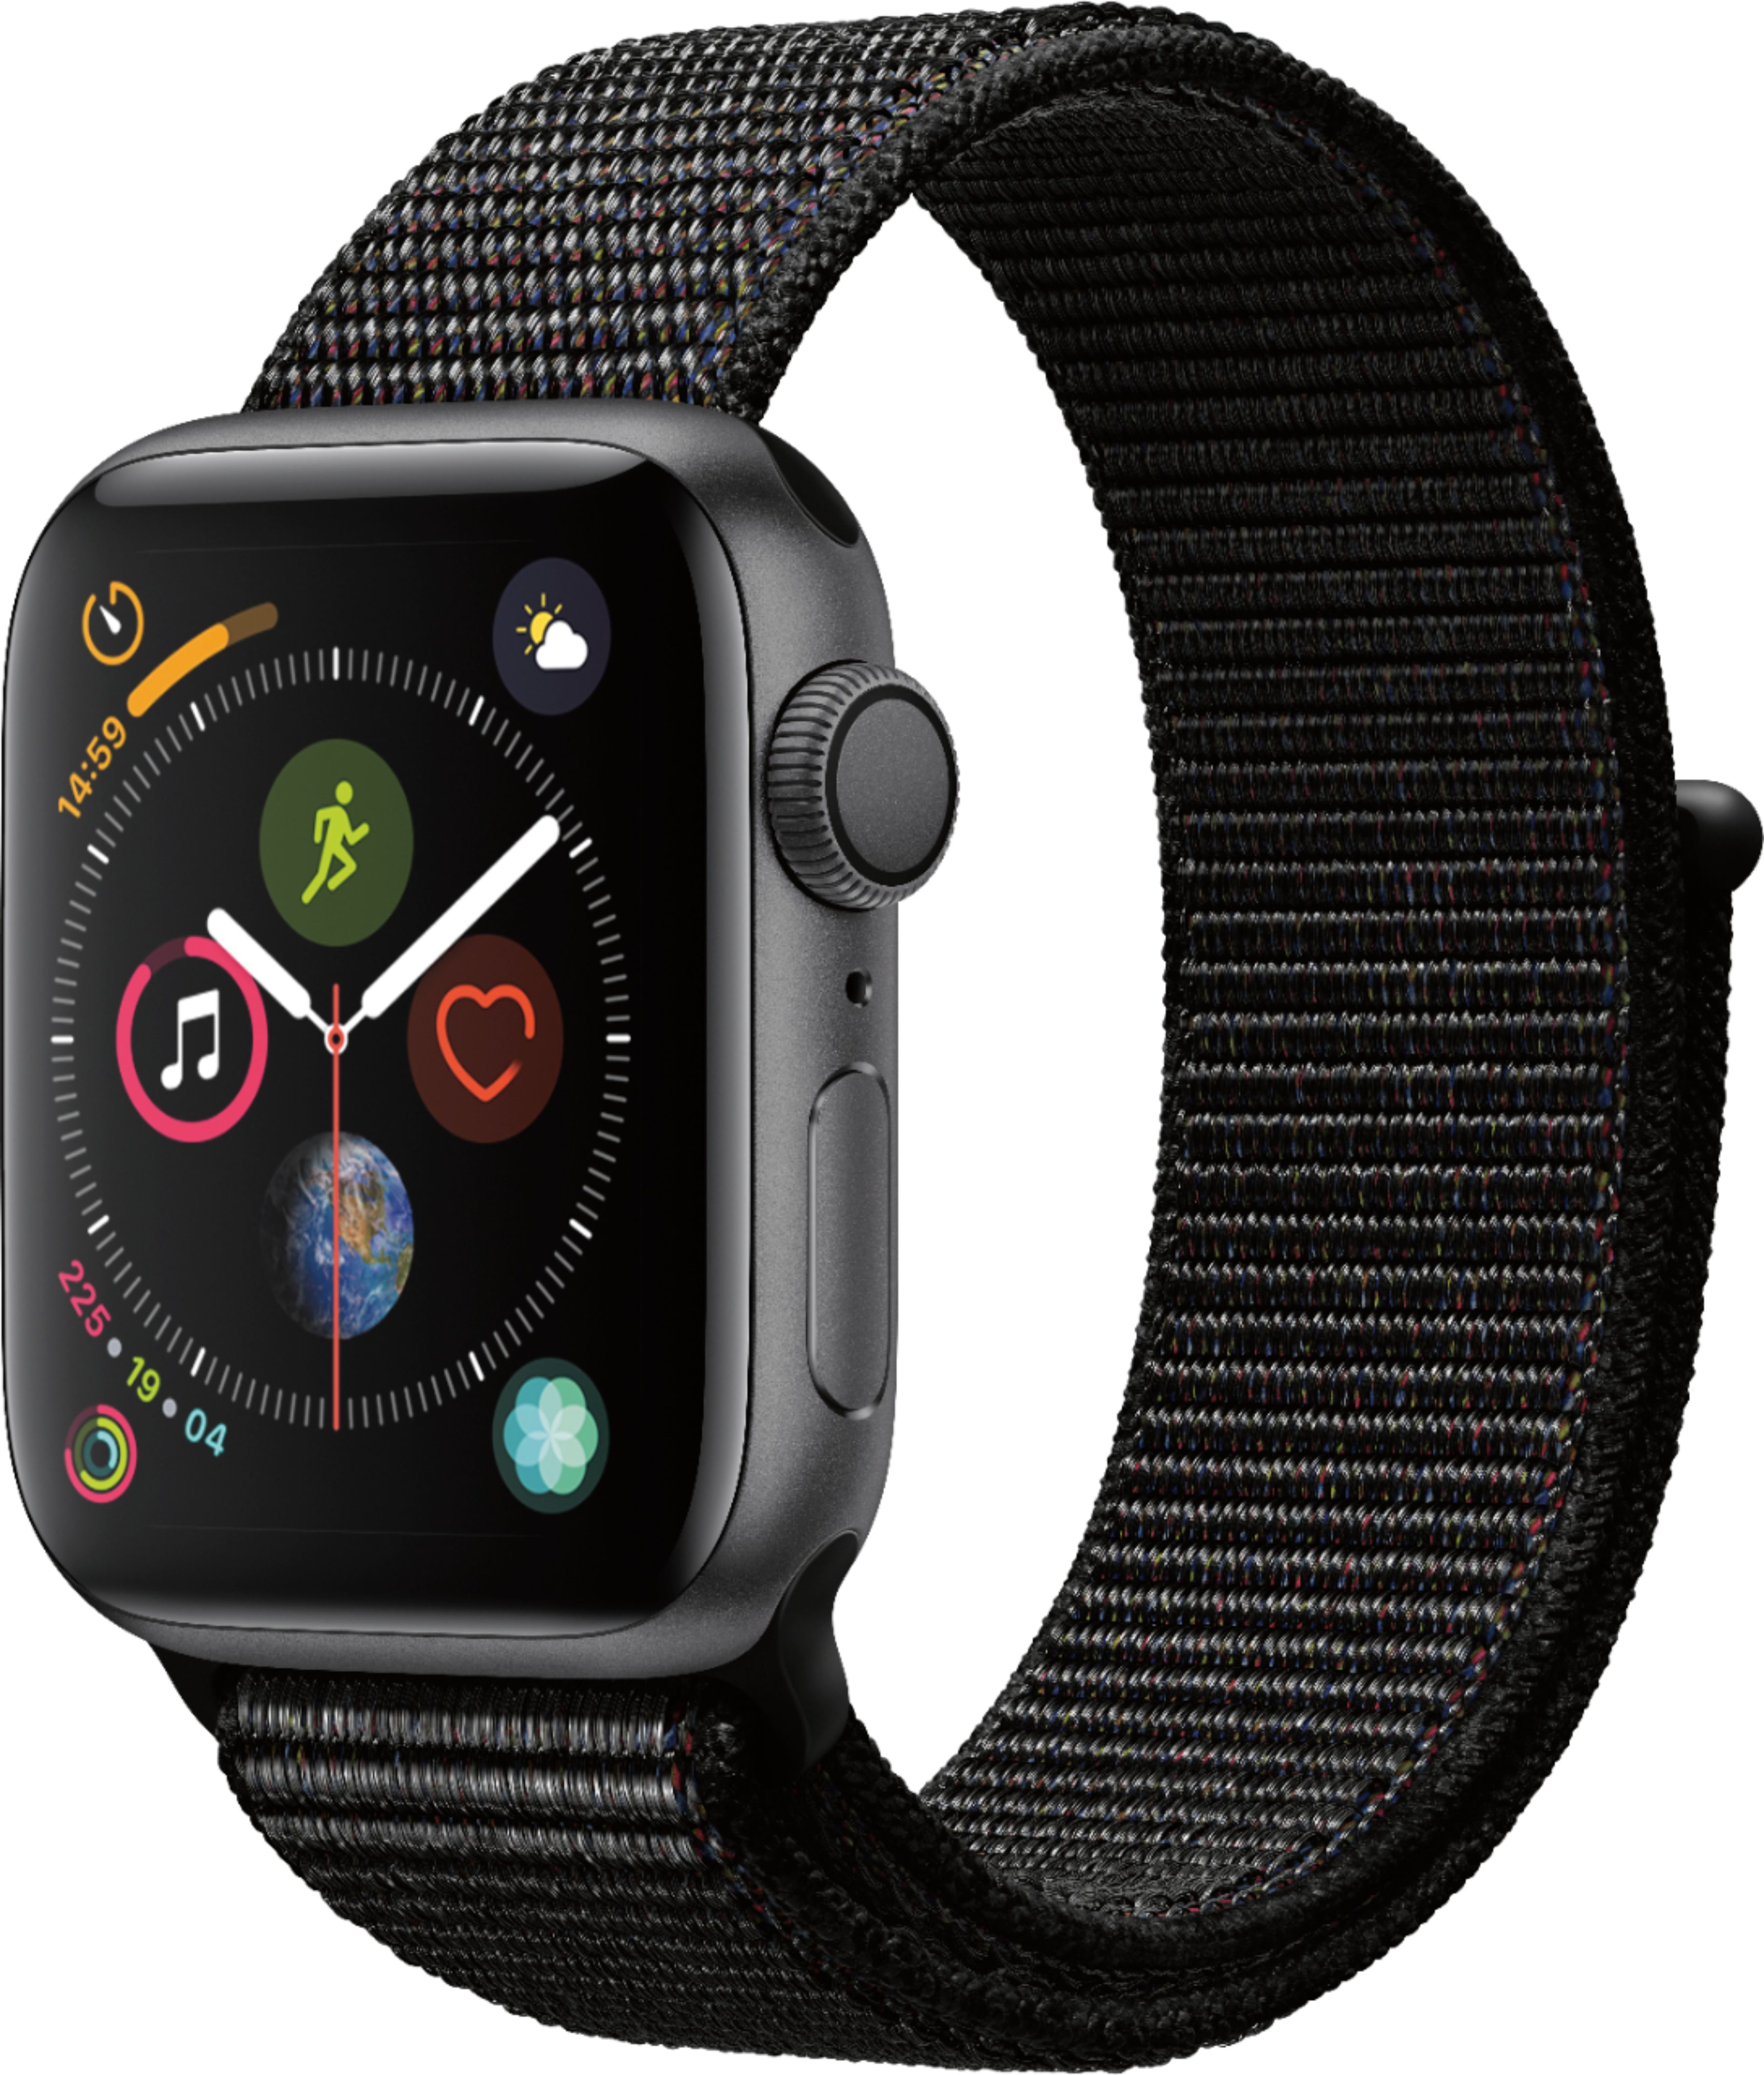 Apple Watch Series 4 (GPS) 40mm Space Gray - Best Buy